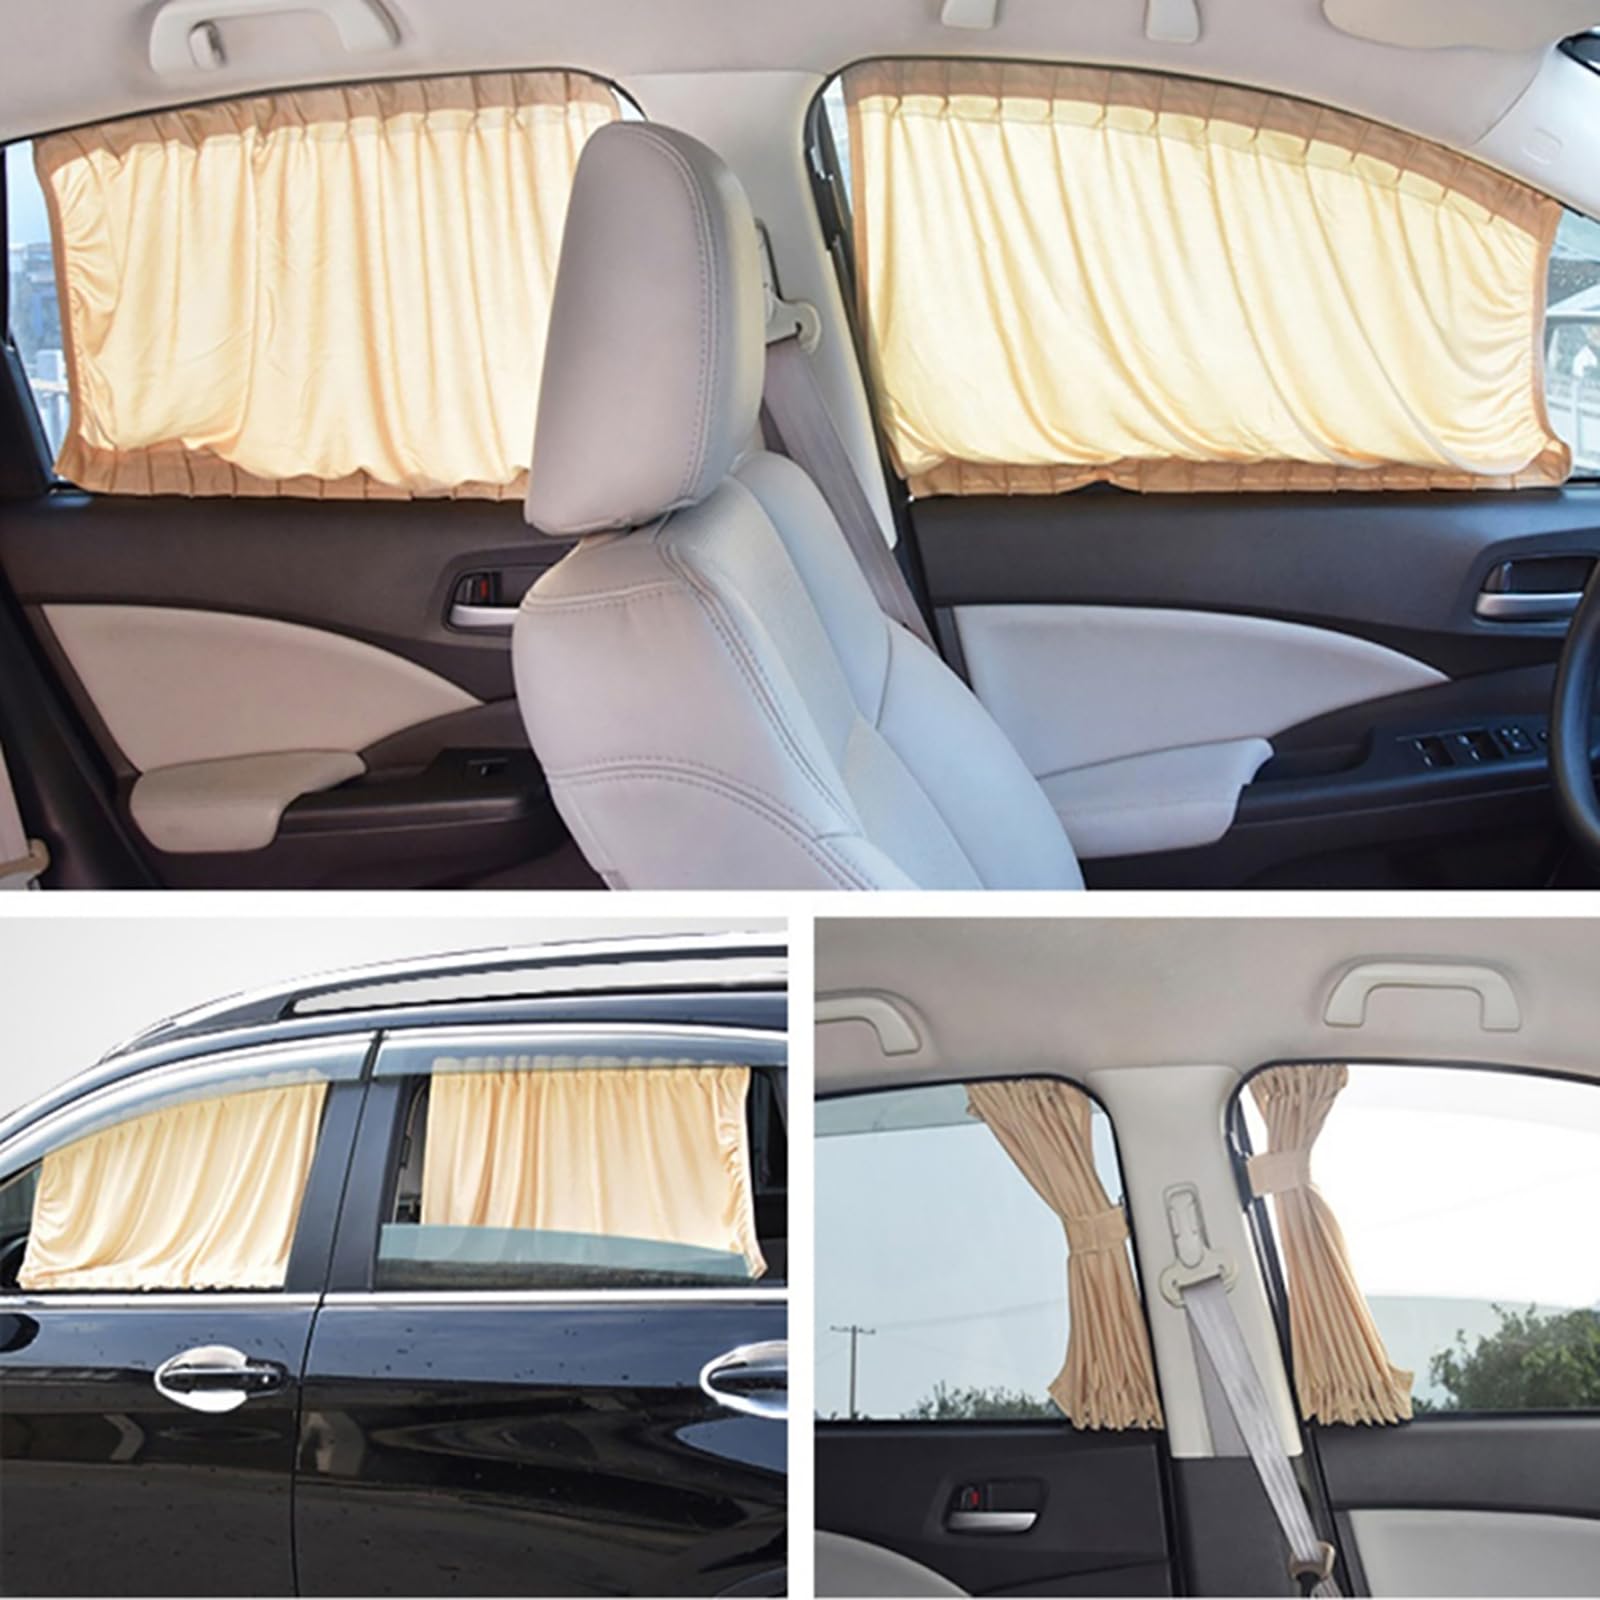 Sonnenschutz fürs Auto Vorhang für Range Rover Evoque/Range Rover Sport/Range Rover Velar, Abnehmbarer Auto Trennvorhang, Blockieren Von UV-Strahlen Und Hitze, Schützt Kinder von ZSSHUIHH